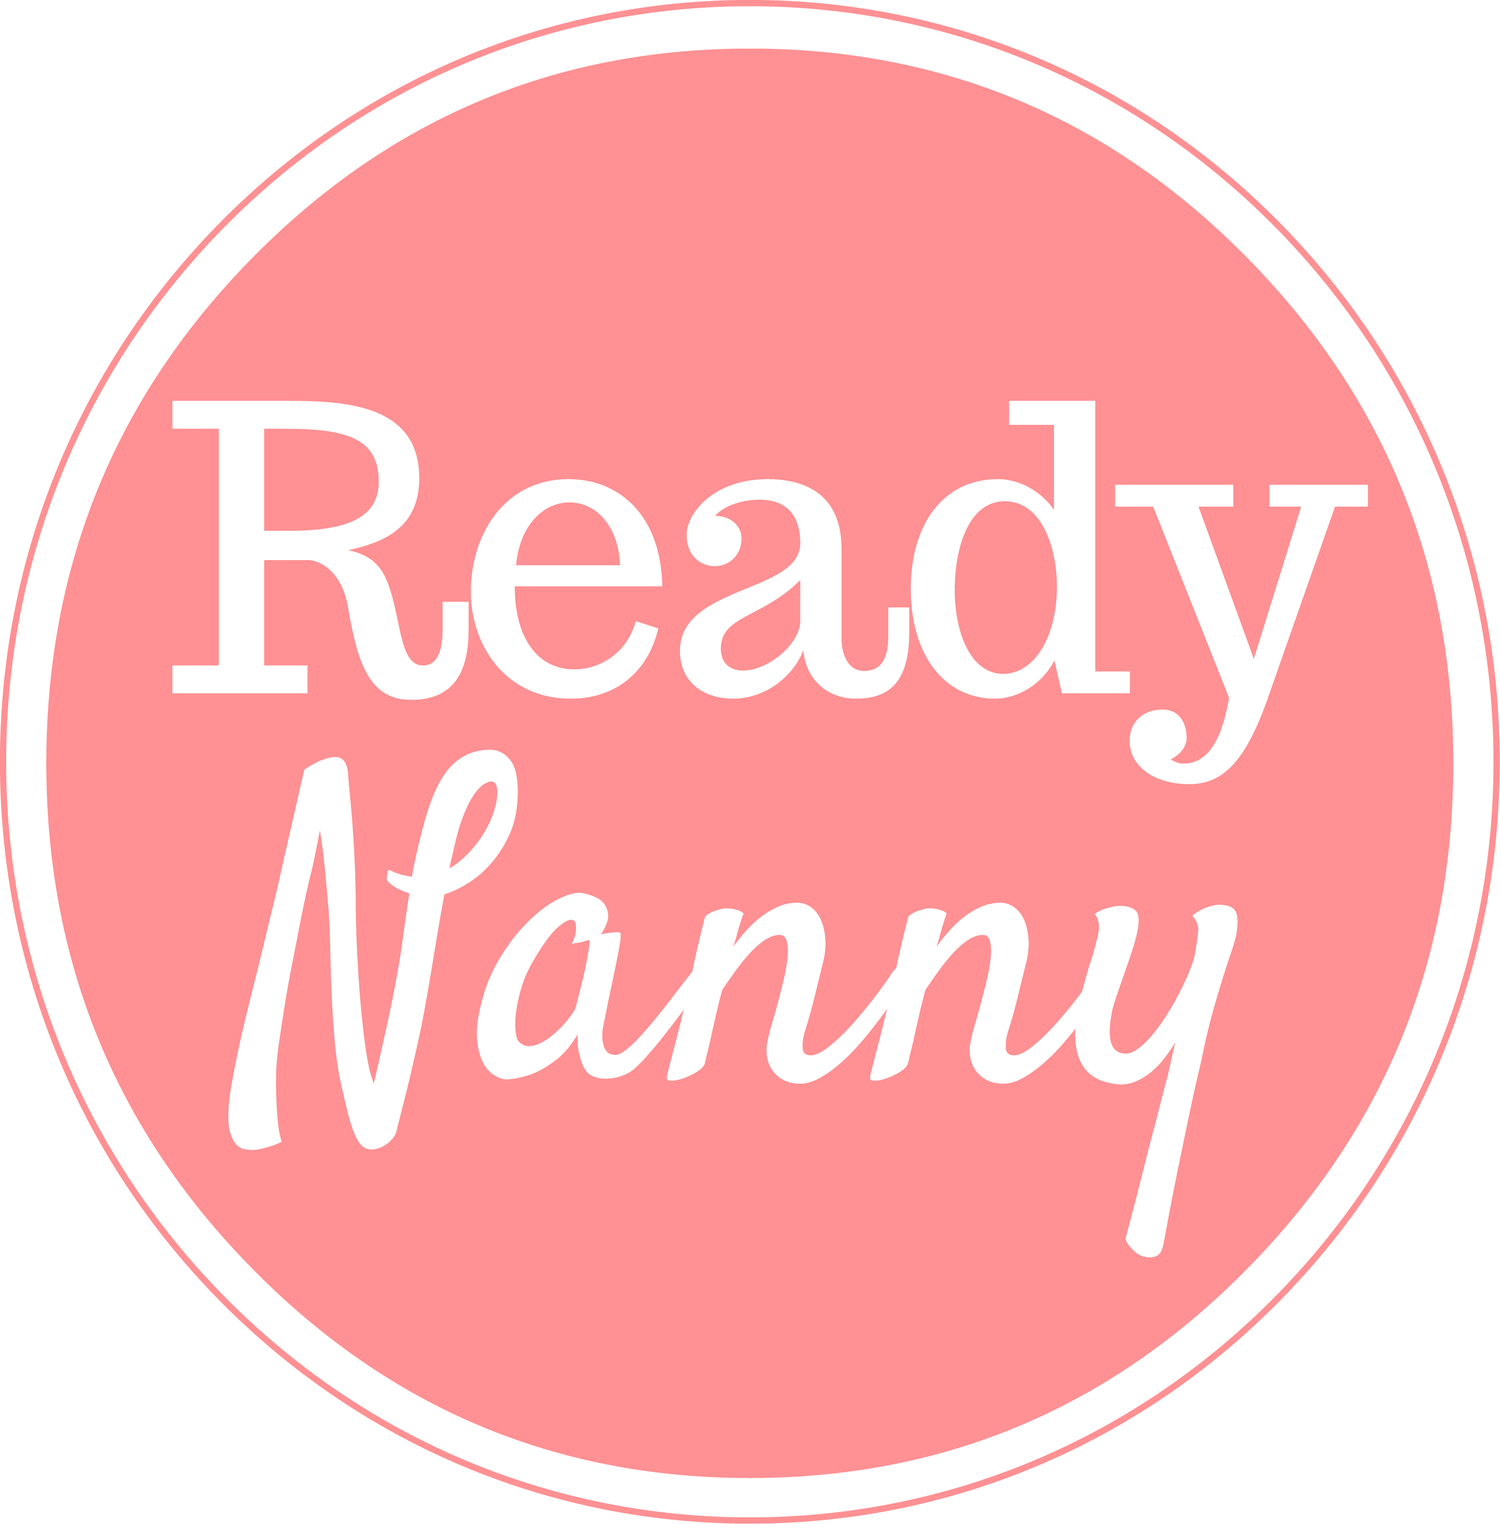 Ready Nanny